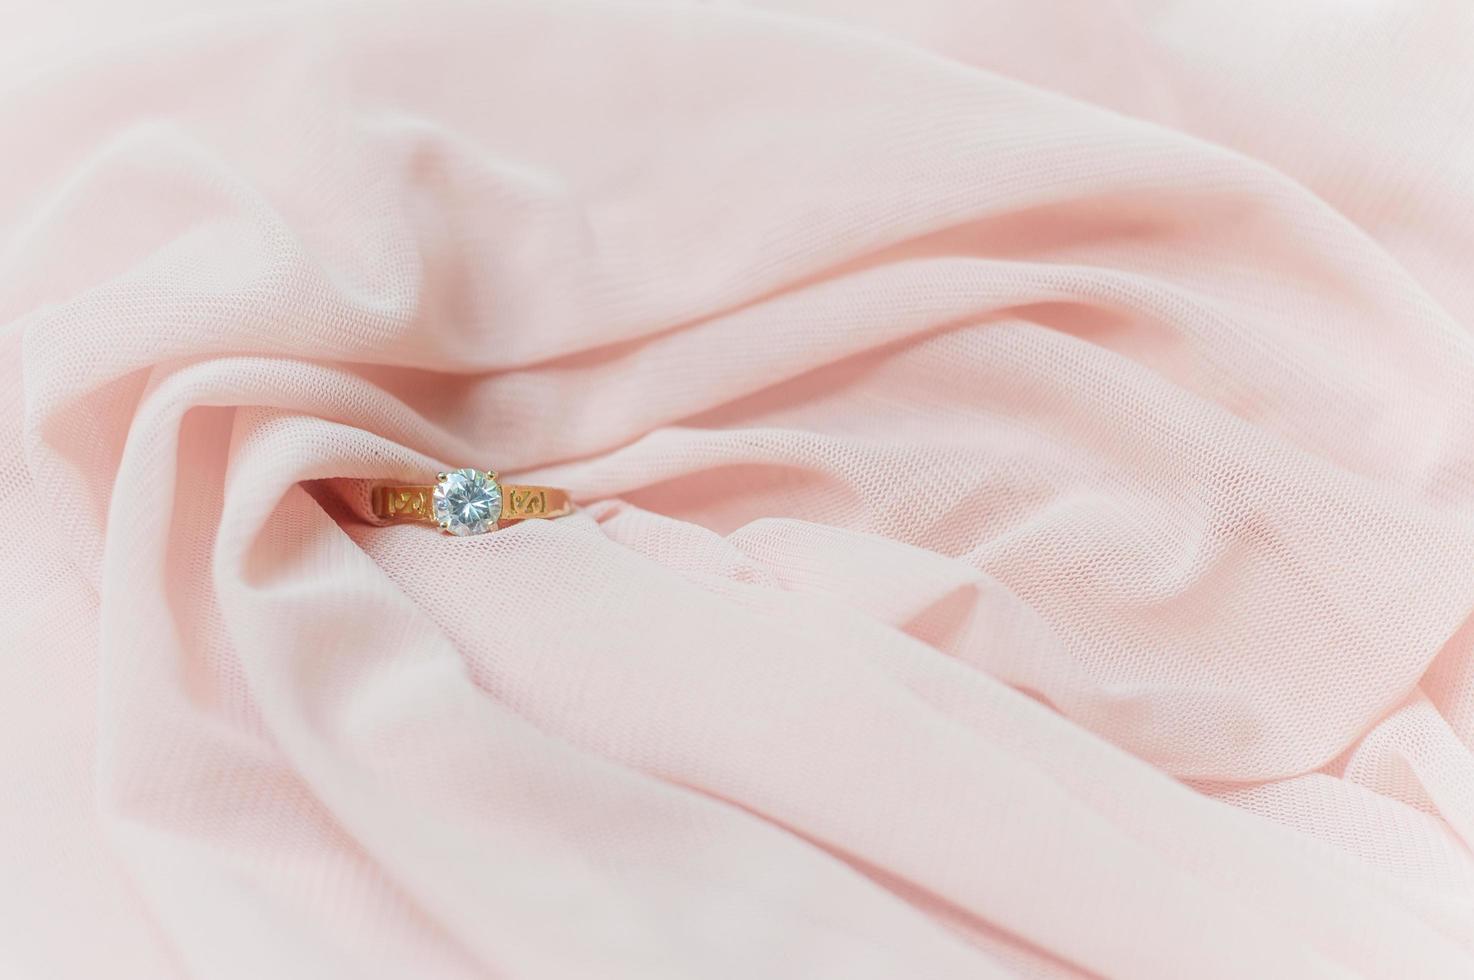 gros plan d'une bague en diamant sur un tissu rose pour la saint-valentin ou un mariage photo